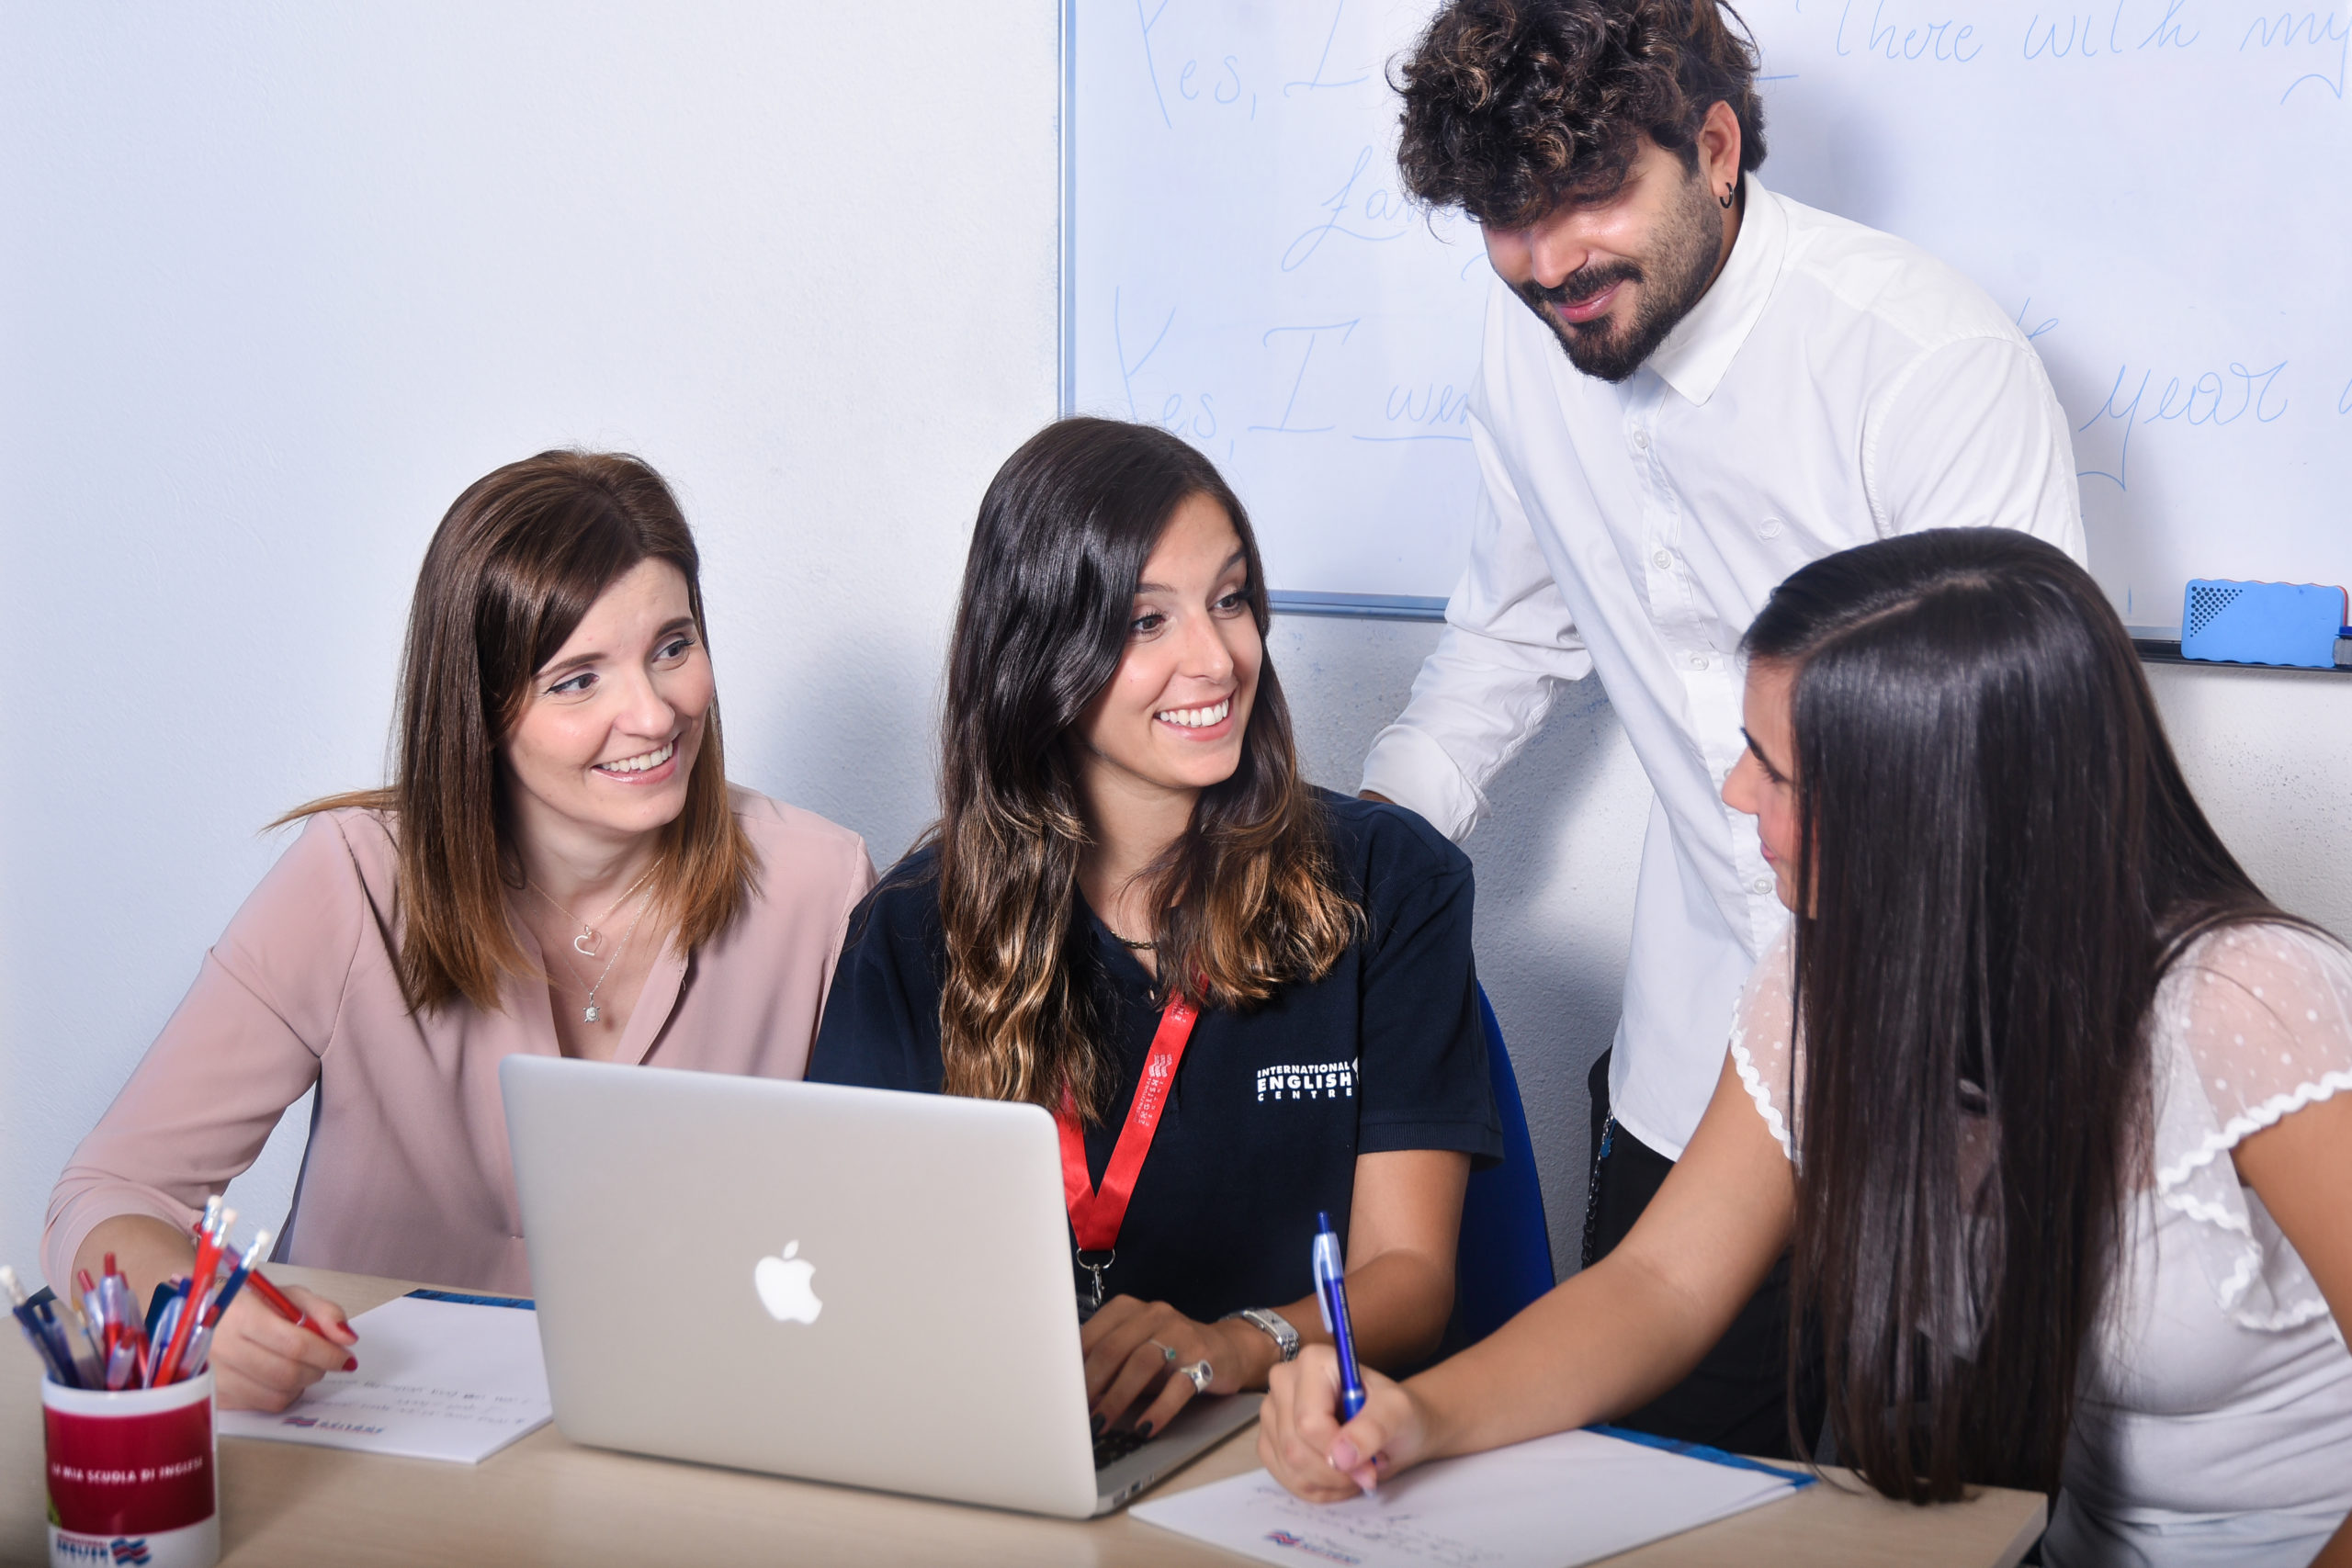 La foto ritrae un docente International English Centre nella sua scrivania durante un corso, circondato da 3 studenti. Nello sfondo la lavagna